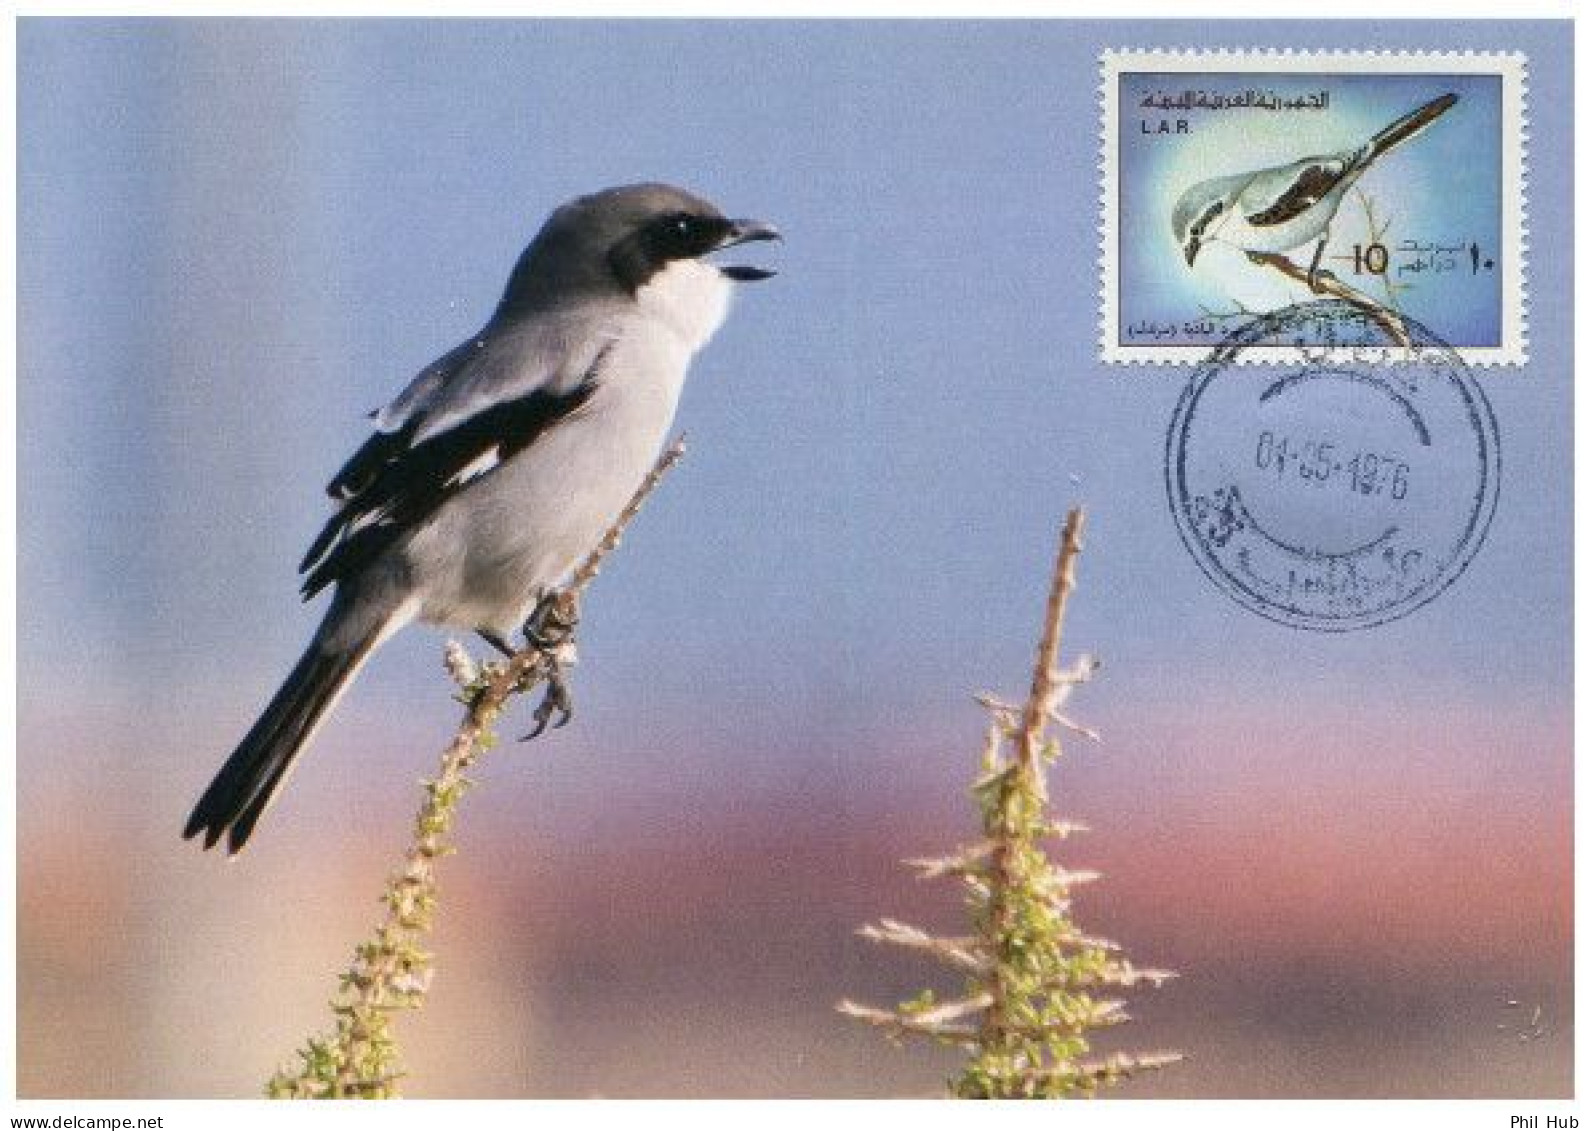 LIBYA 1976 Birds Bird "Iberian Grey Shrike" (maximum-card) #2 - Moineaux